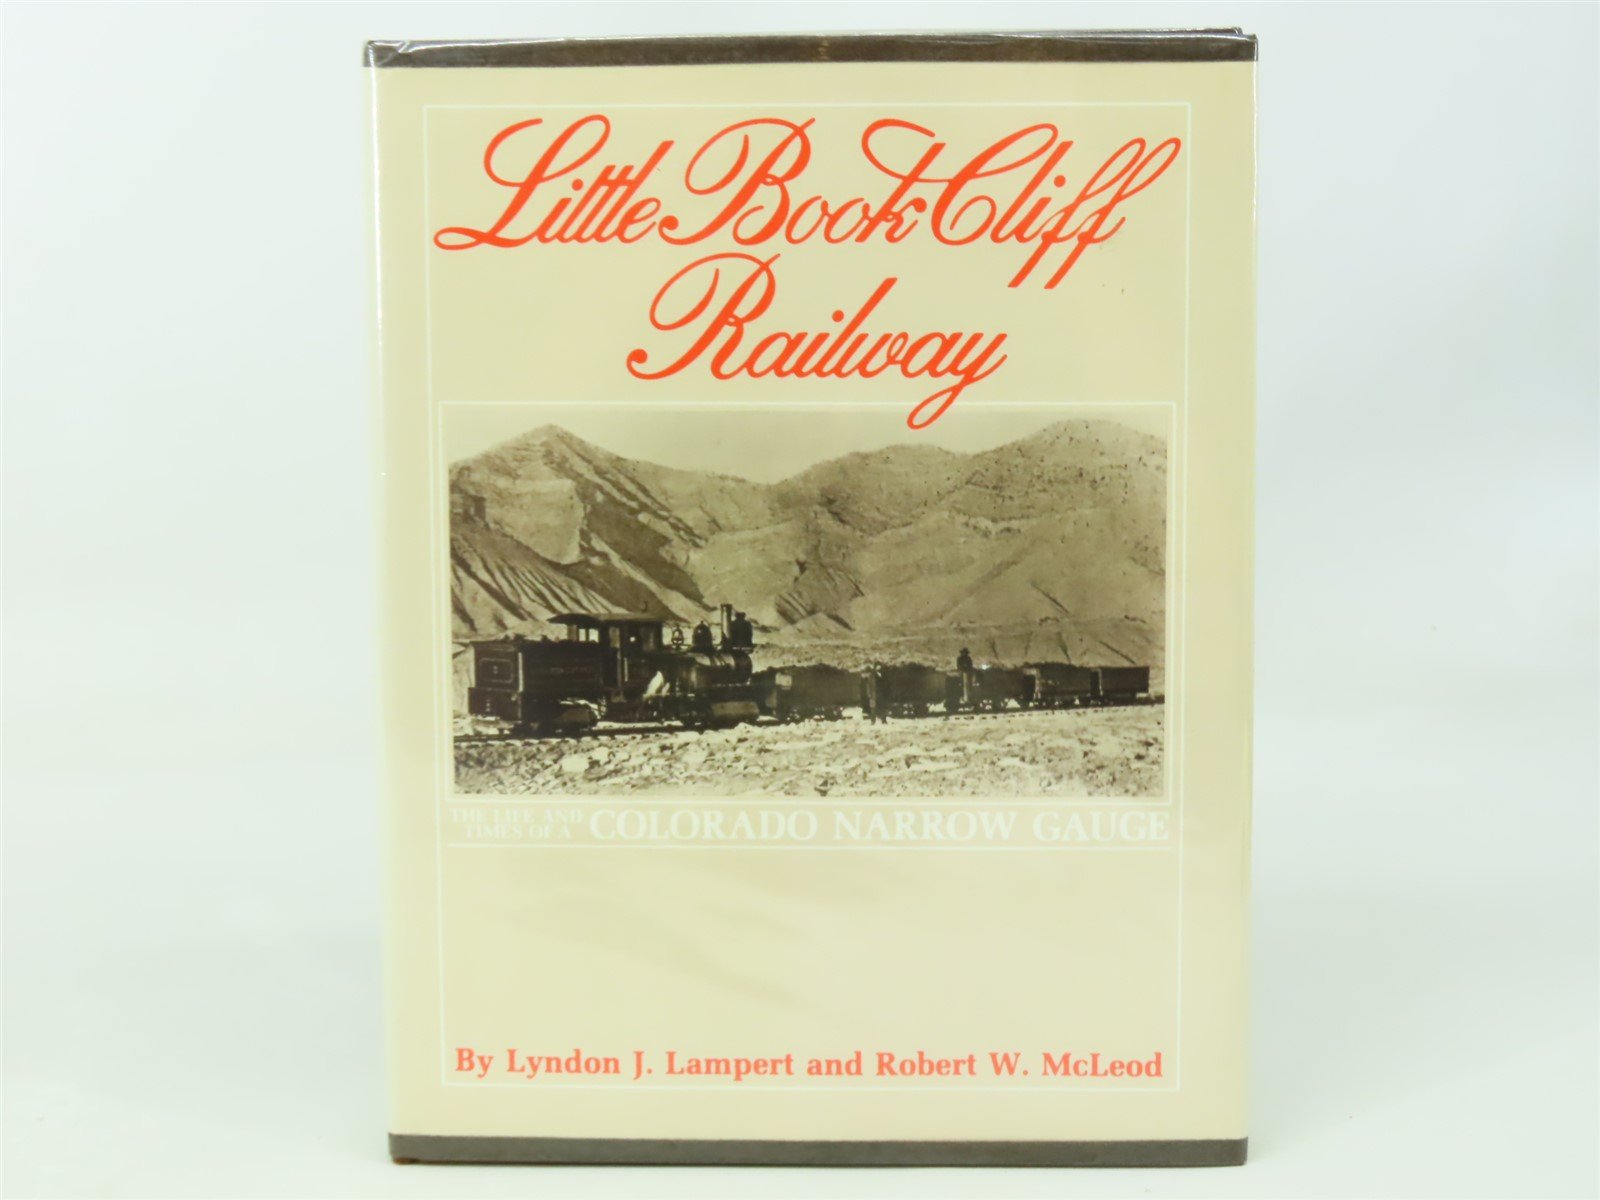 Little Book Cliff Railway by Lyndon J. Lampert & Robert W. McLeod ©1984 HC Book